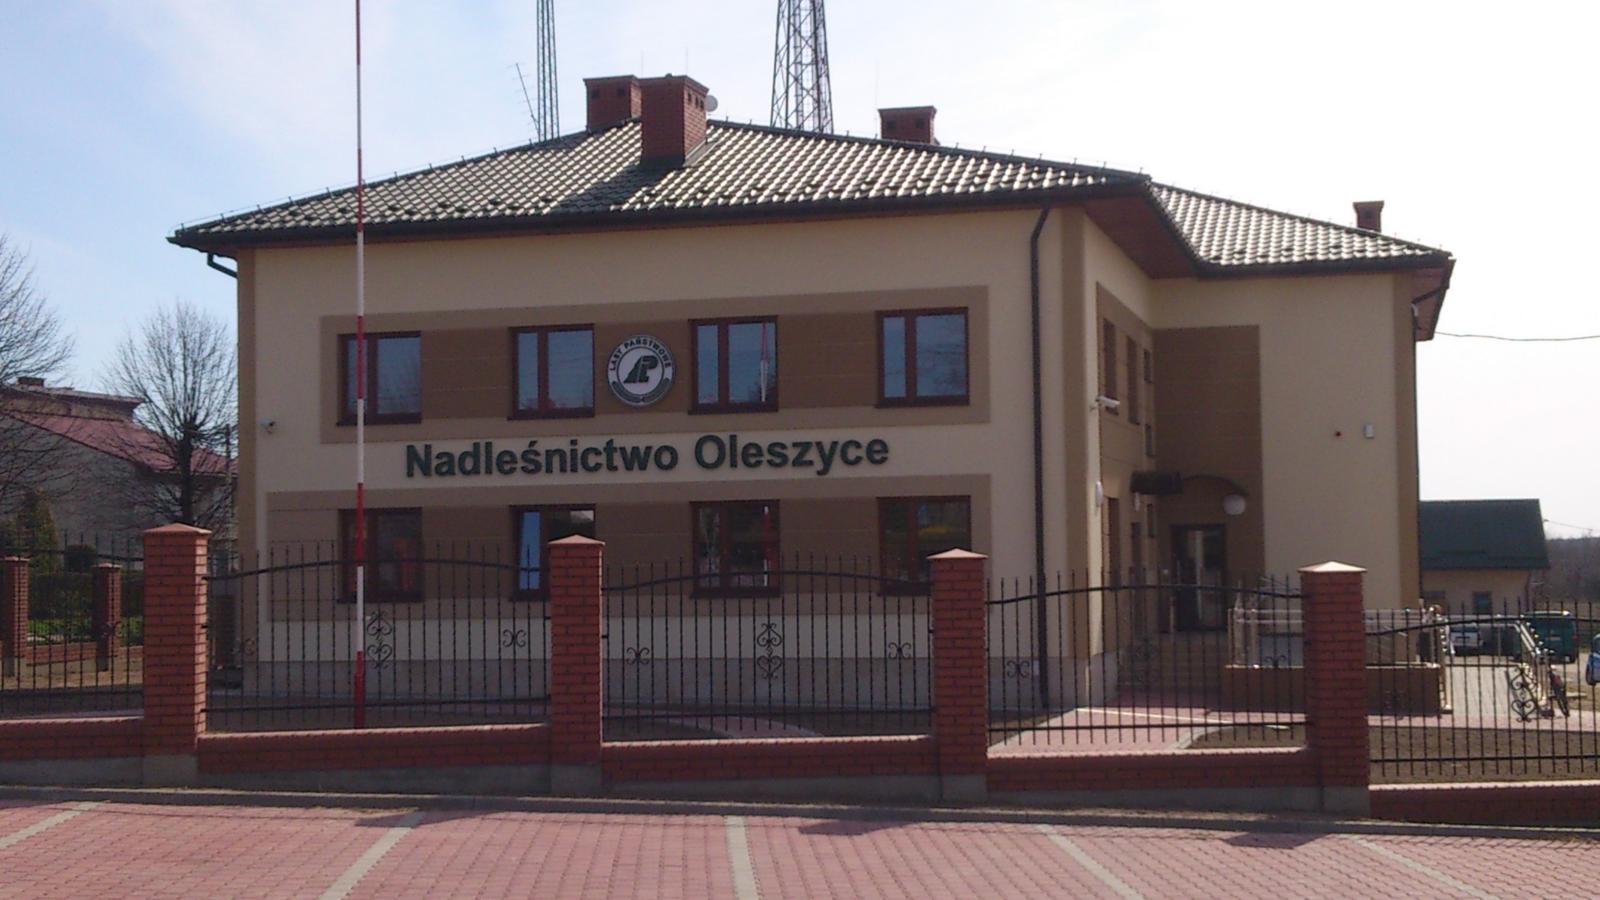 Headquarters Nadleśnictwo Oleszyce